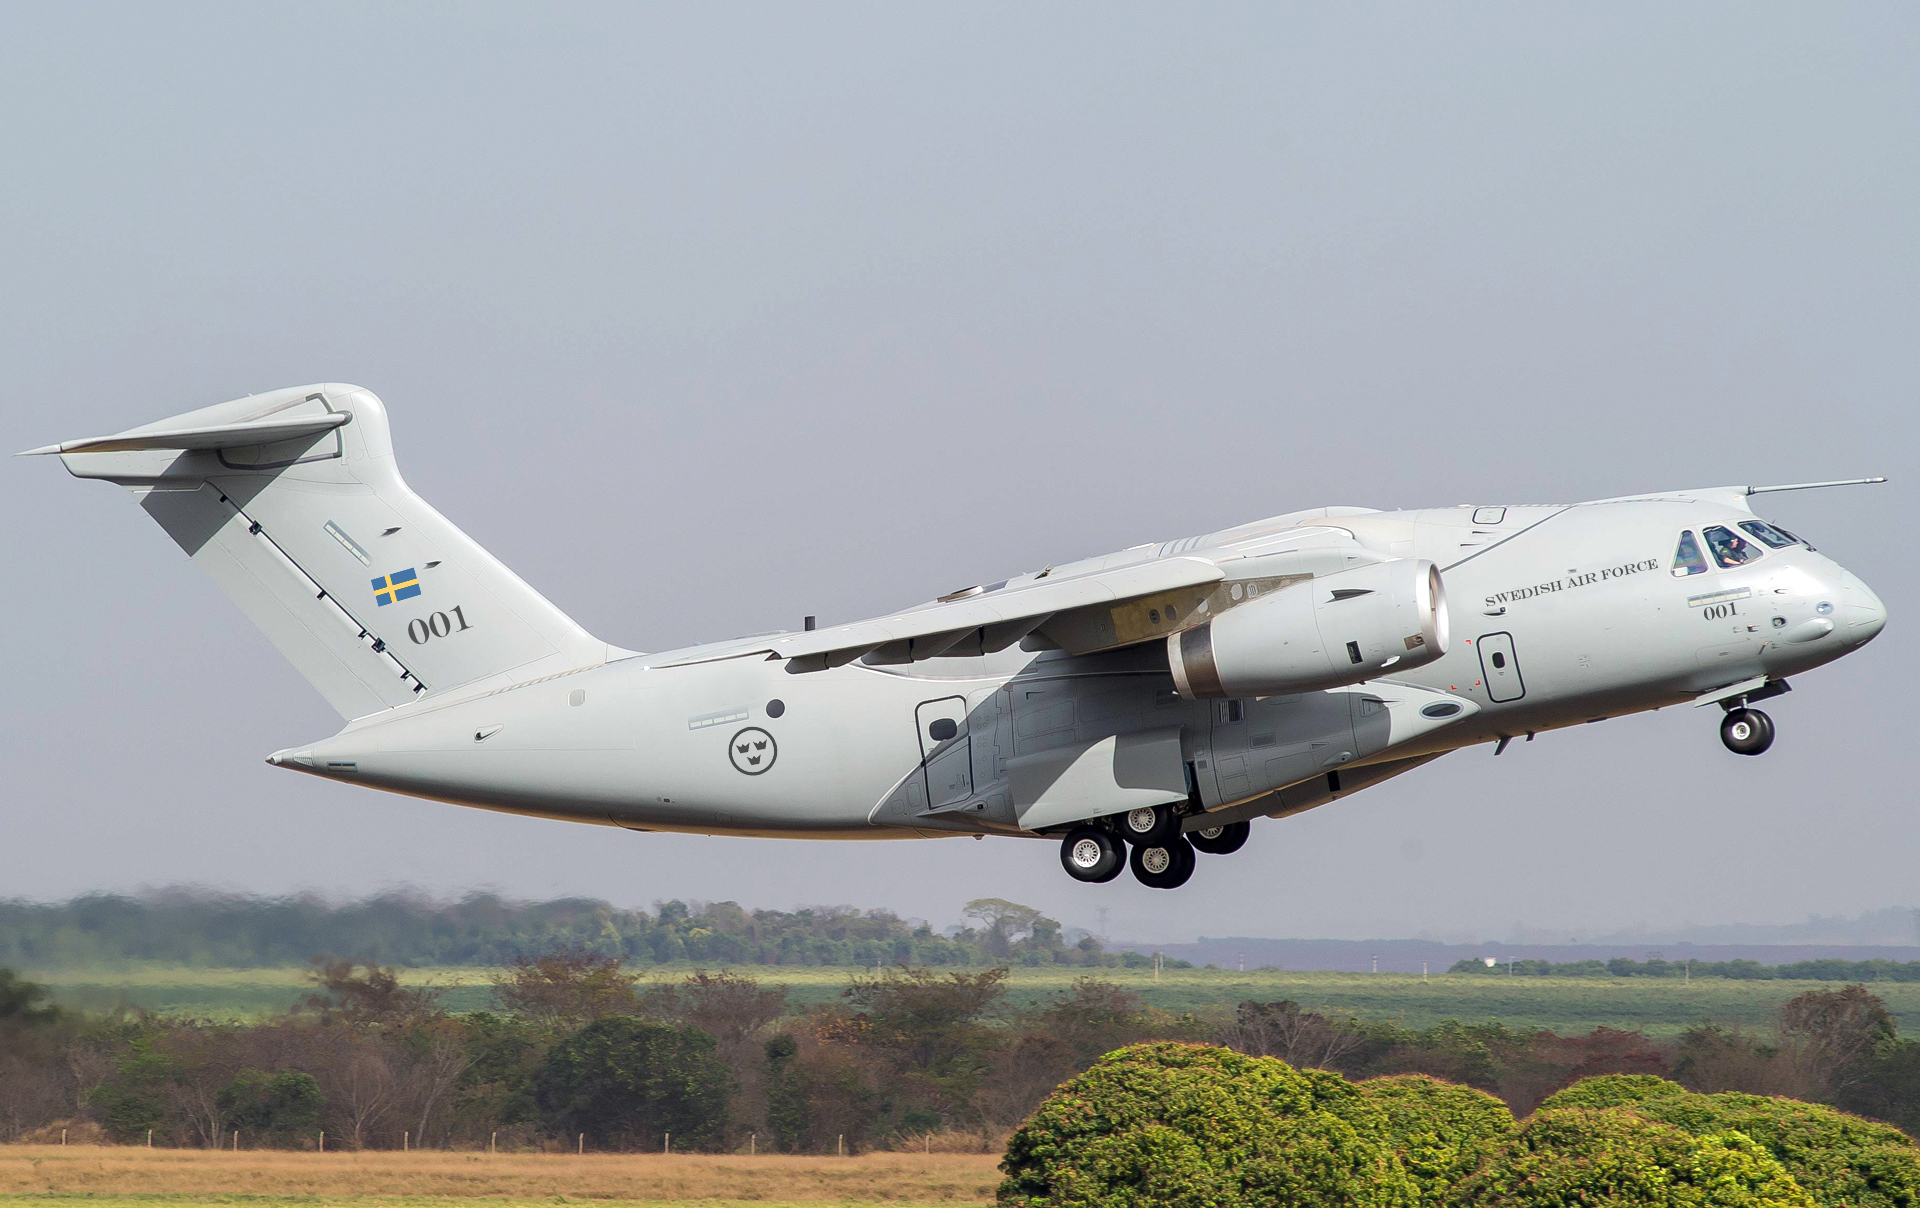 Embraer negocia venda do KC-390 com mais oito países, diz